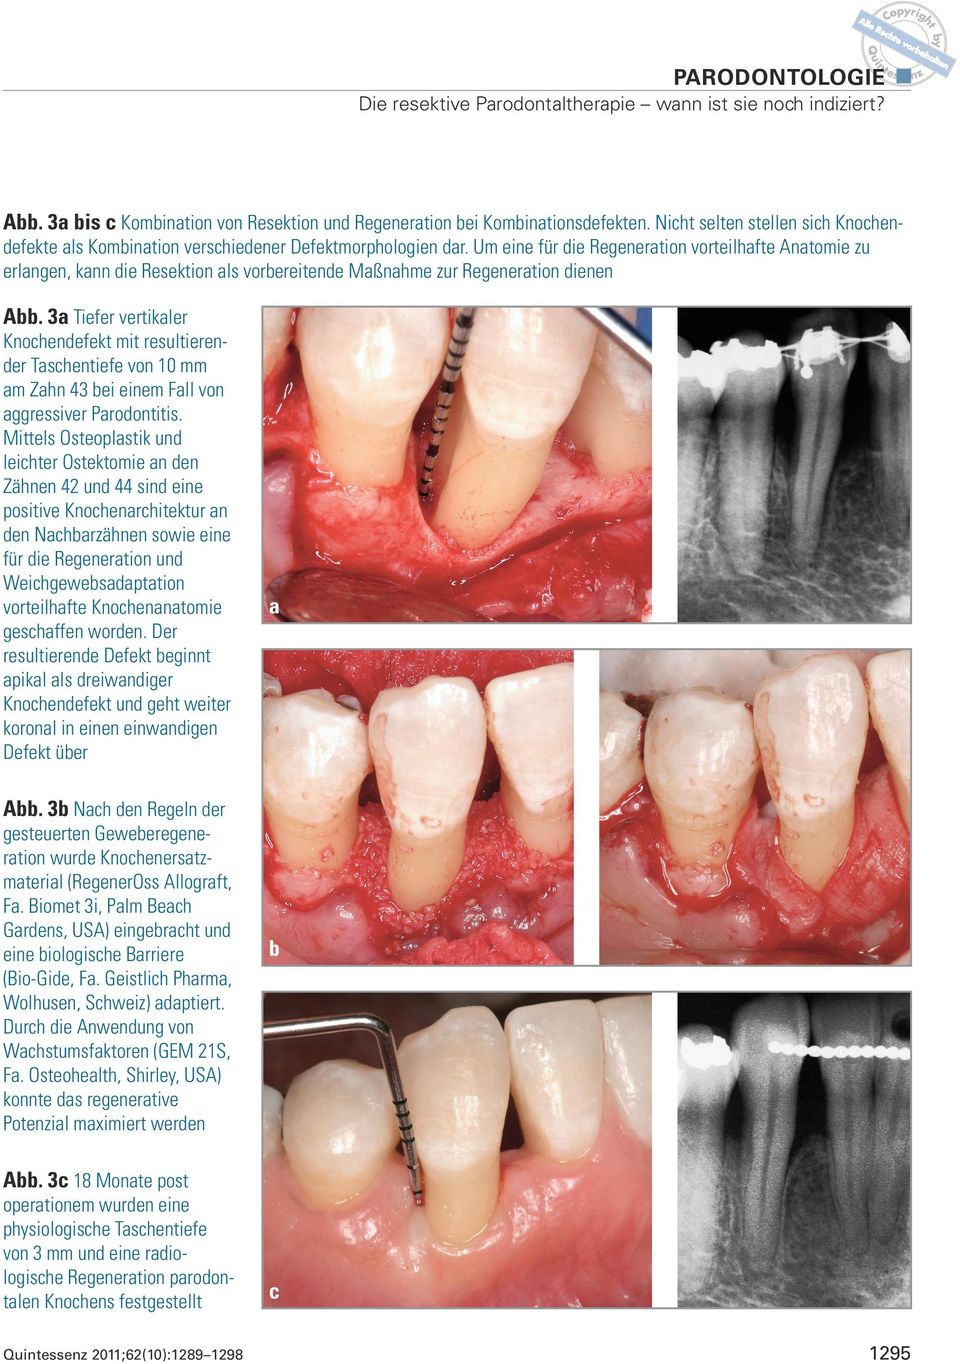 3a Tiefer vertikaler Knochendefekt mit resultierender Taschentiefe von 10 mm am Zahn 43 bei einem Fall von aggressiver Parodontitis.